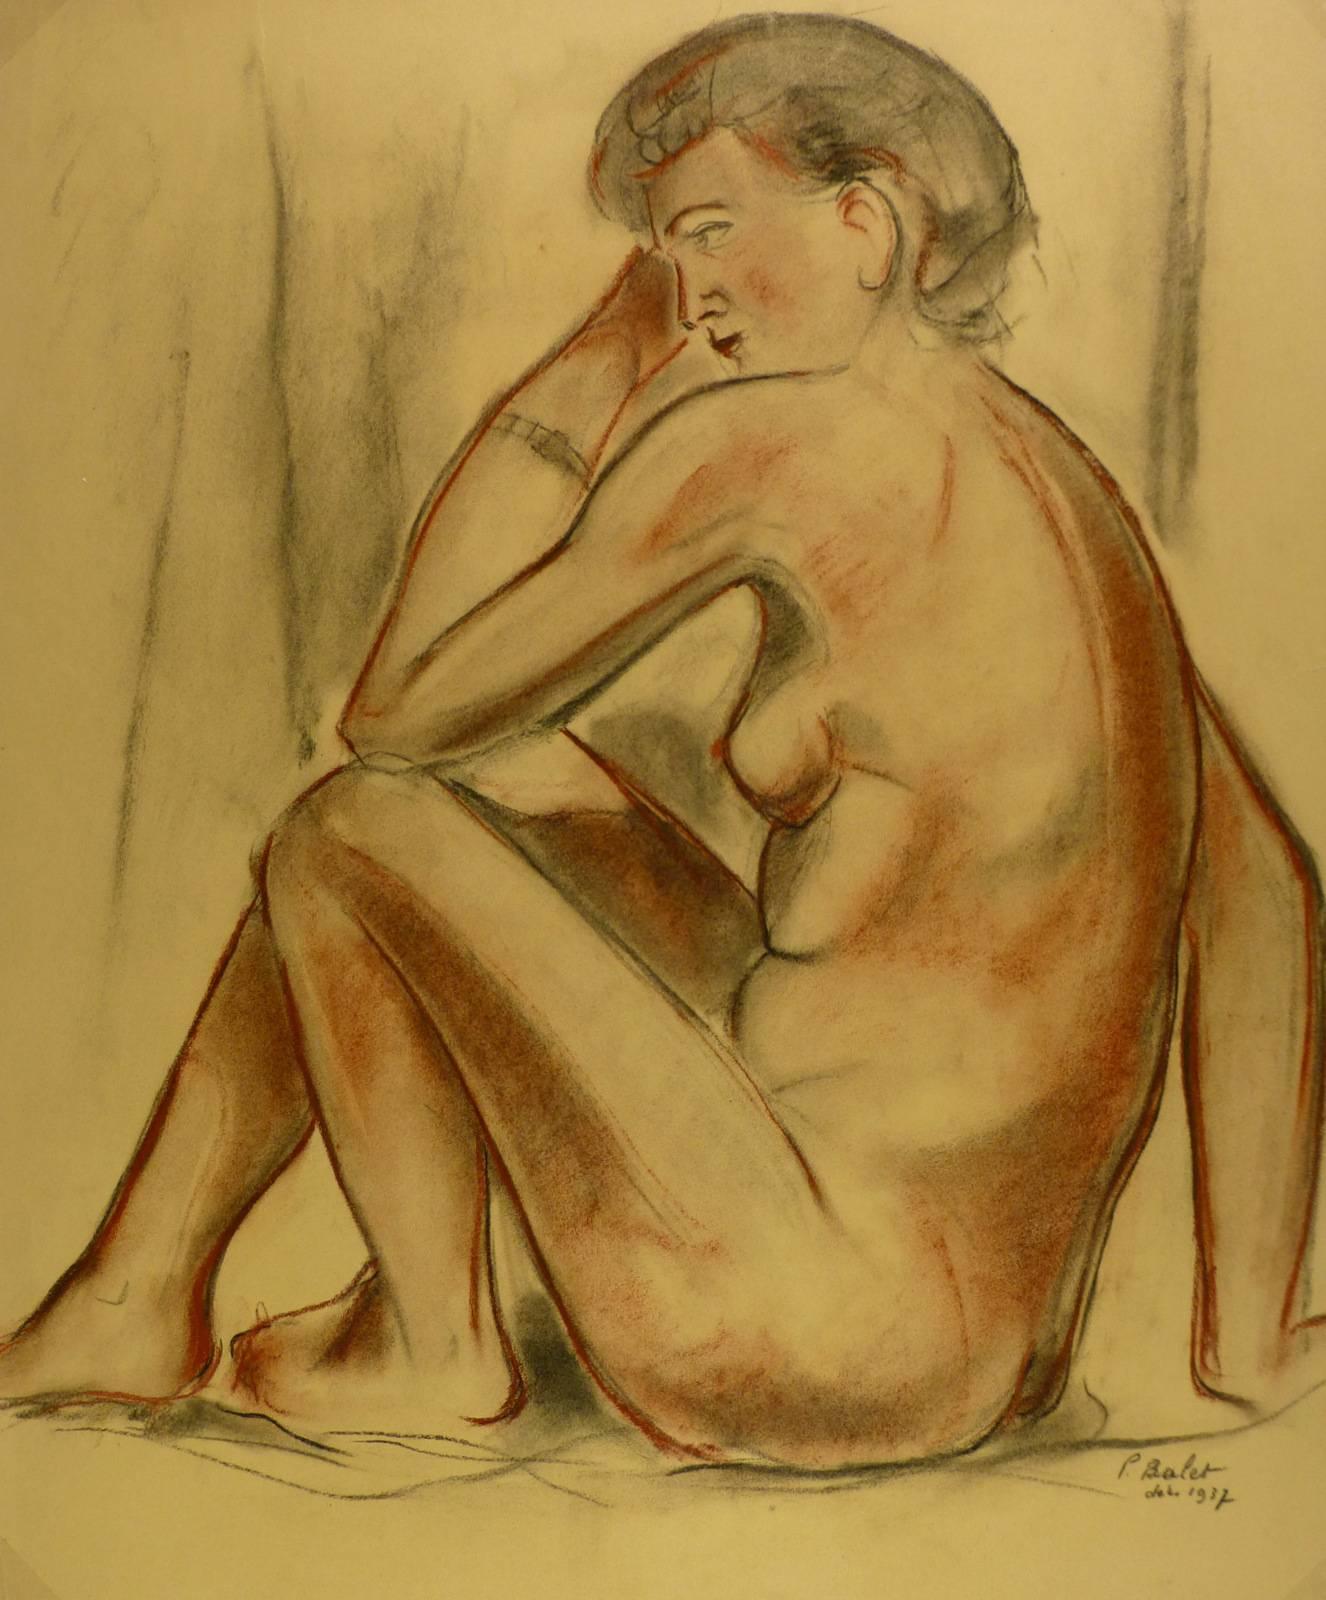 Nudefarbener weiblicher Akt in Holzkohle – Art von P. Balet